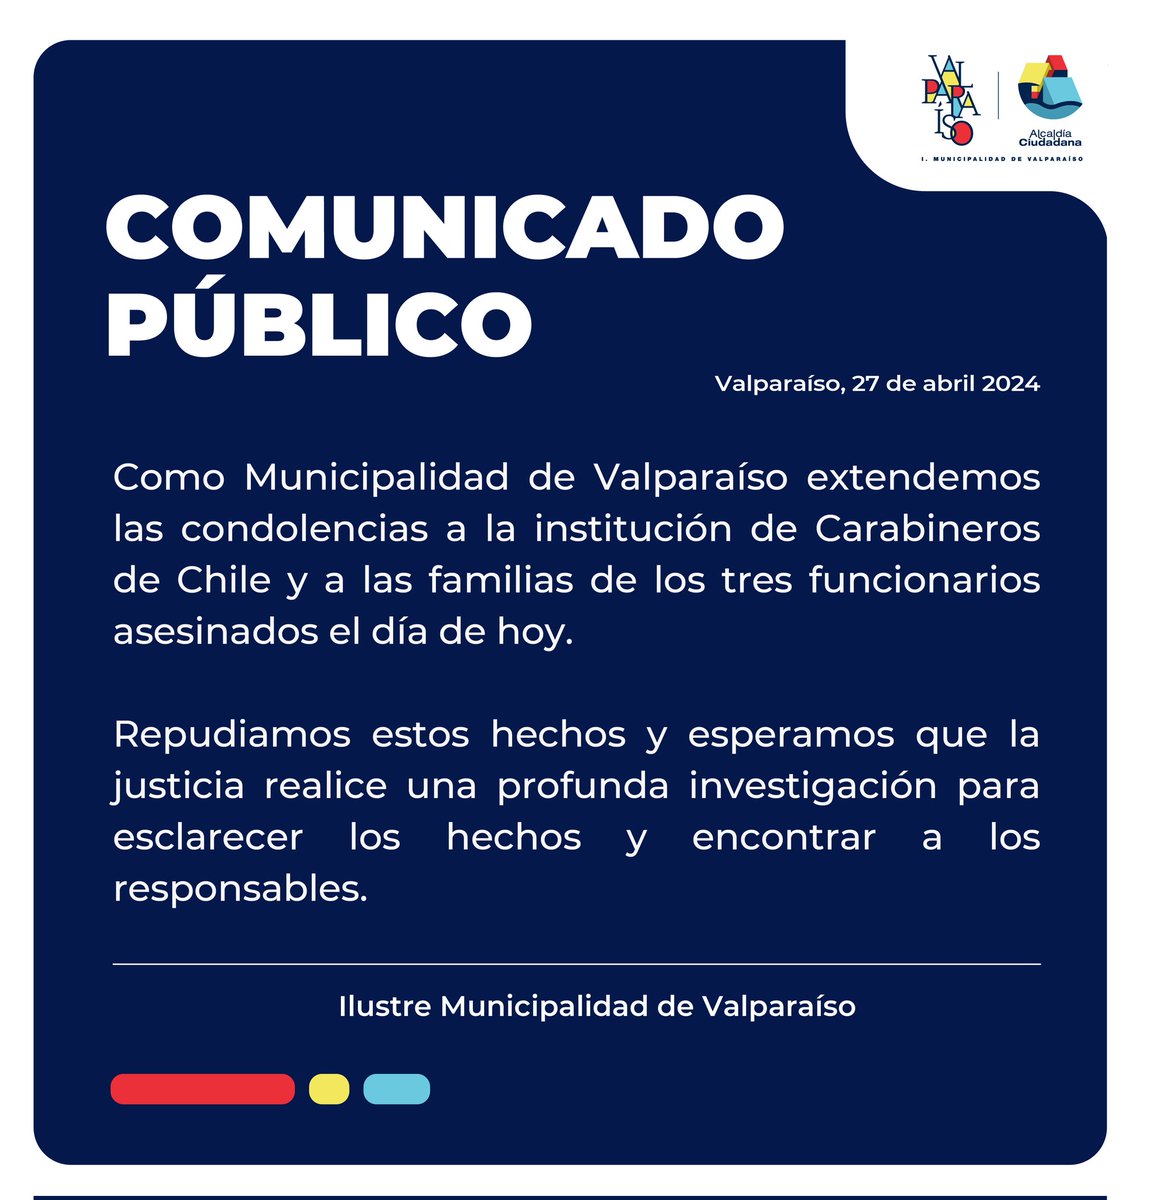 🔴 Respecto de la muerte de tres funcionarios de Carabineros de Chile en el sur del país, la Municipalidad de Valparaíso declara lo siguiente: